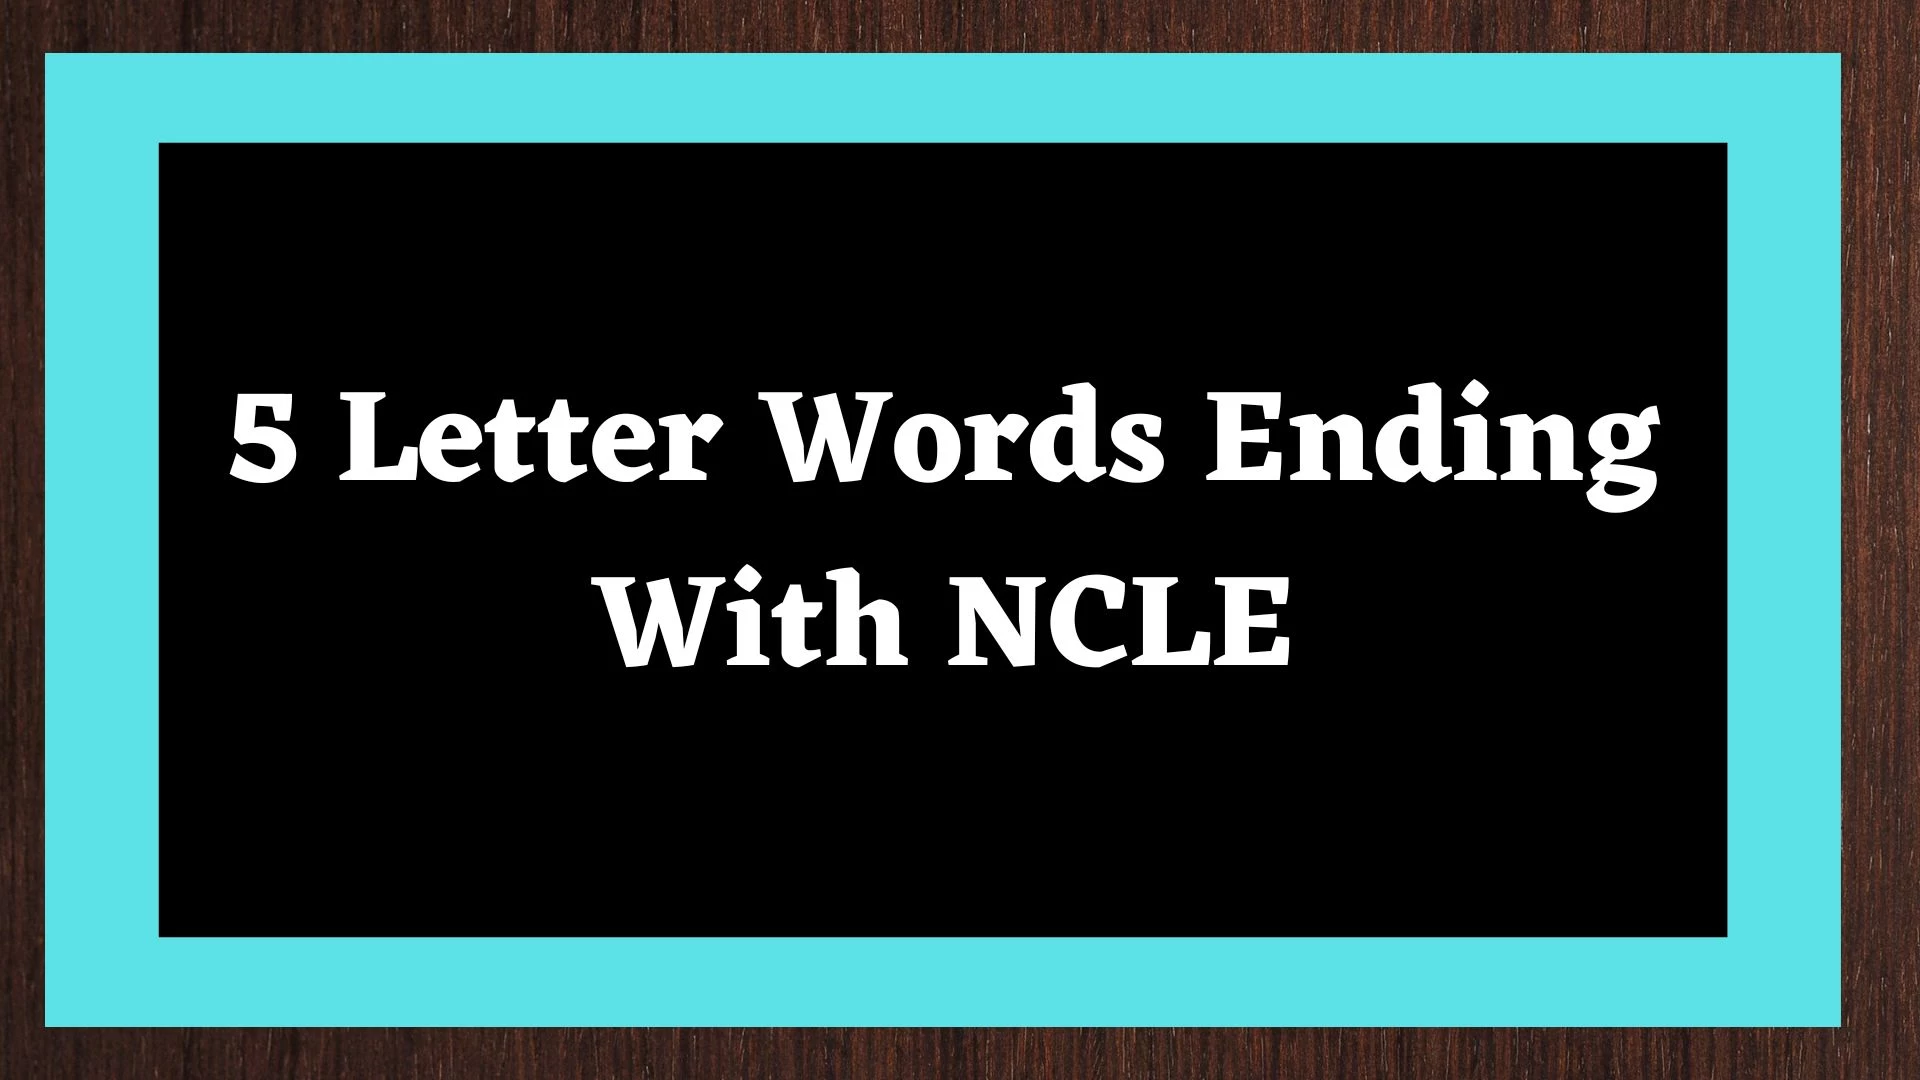 Palabra de 5 letras que termina en NCLE incluye 3 palabras